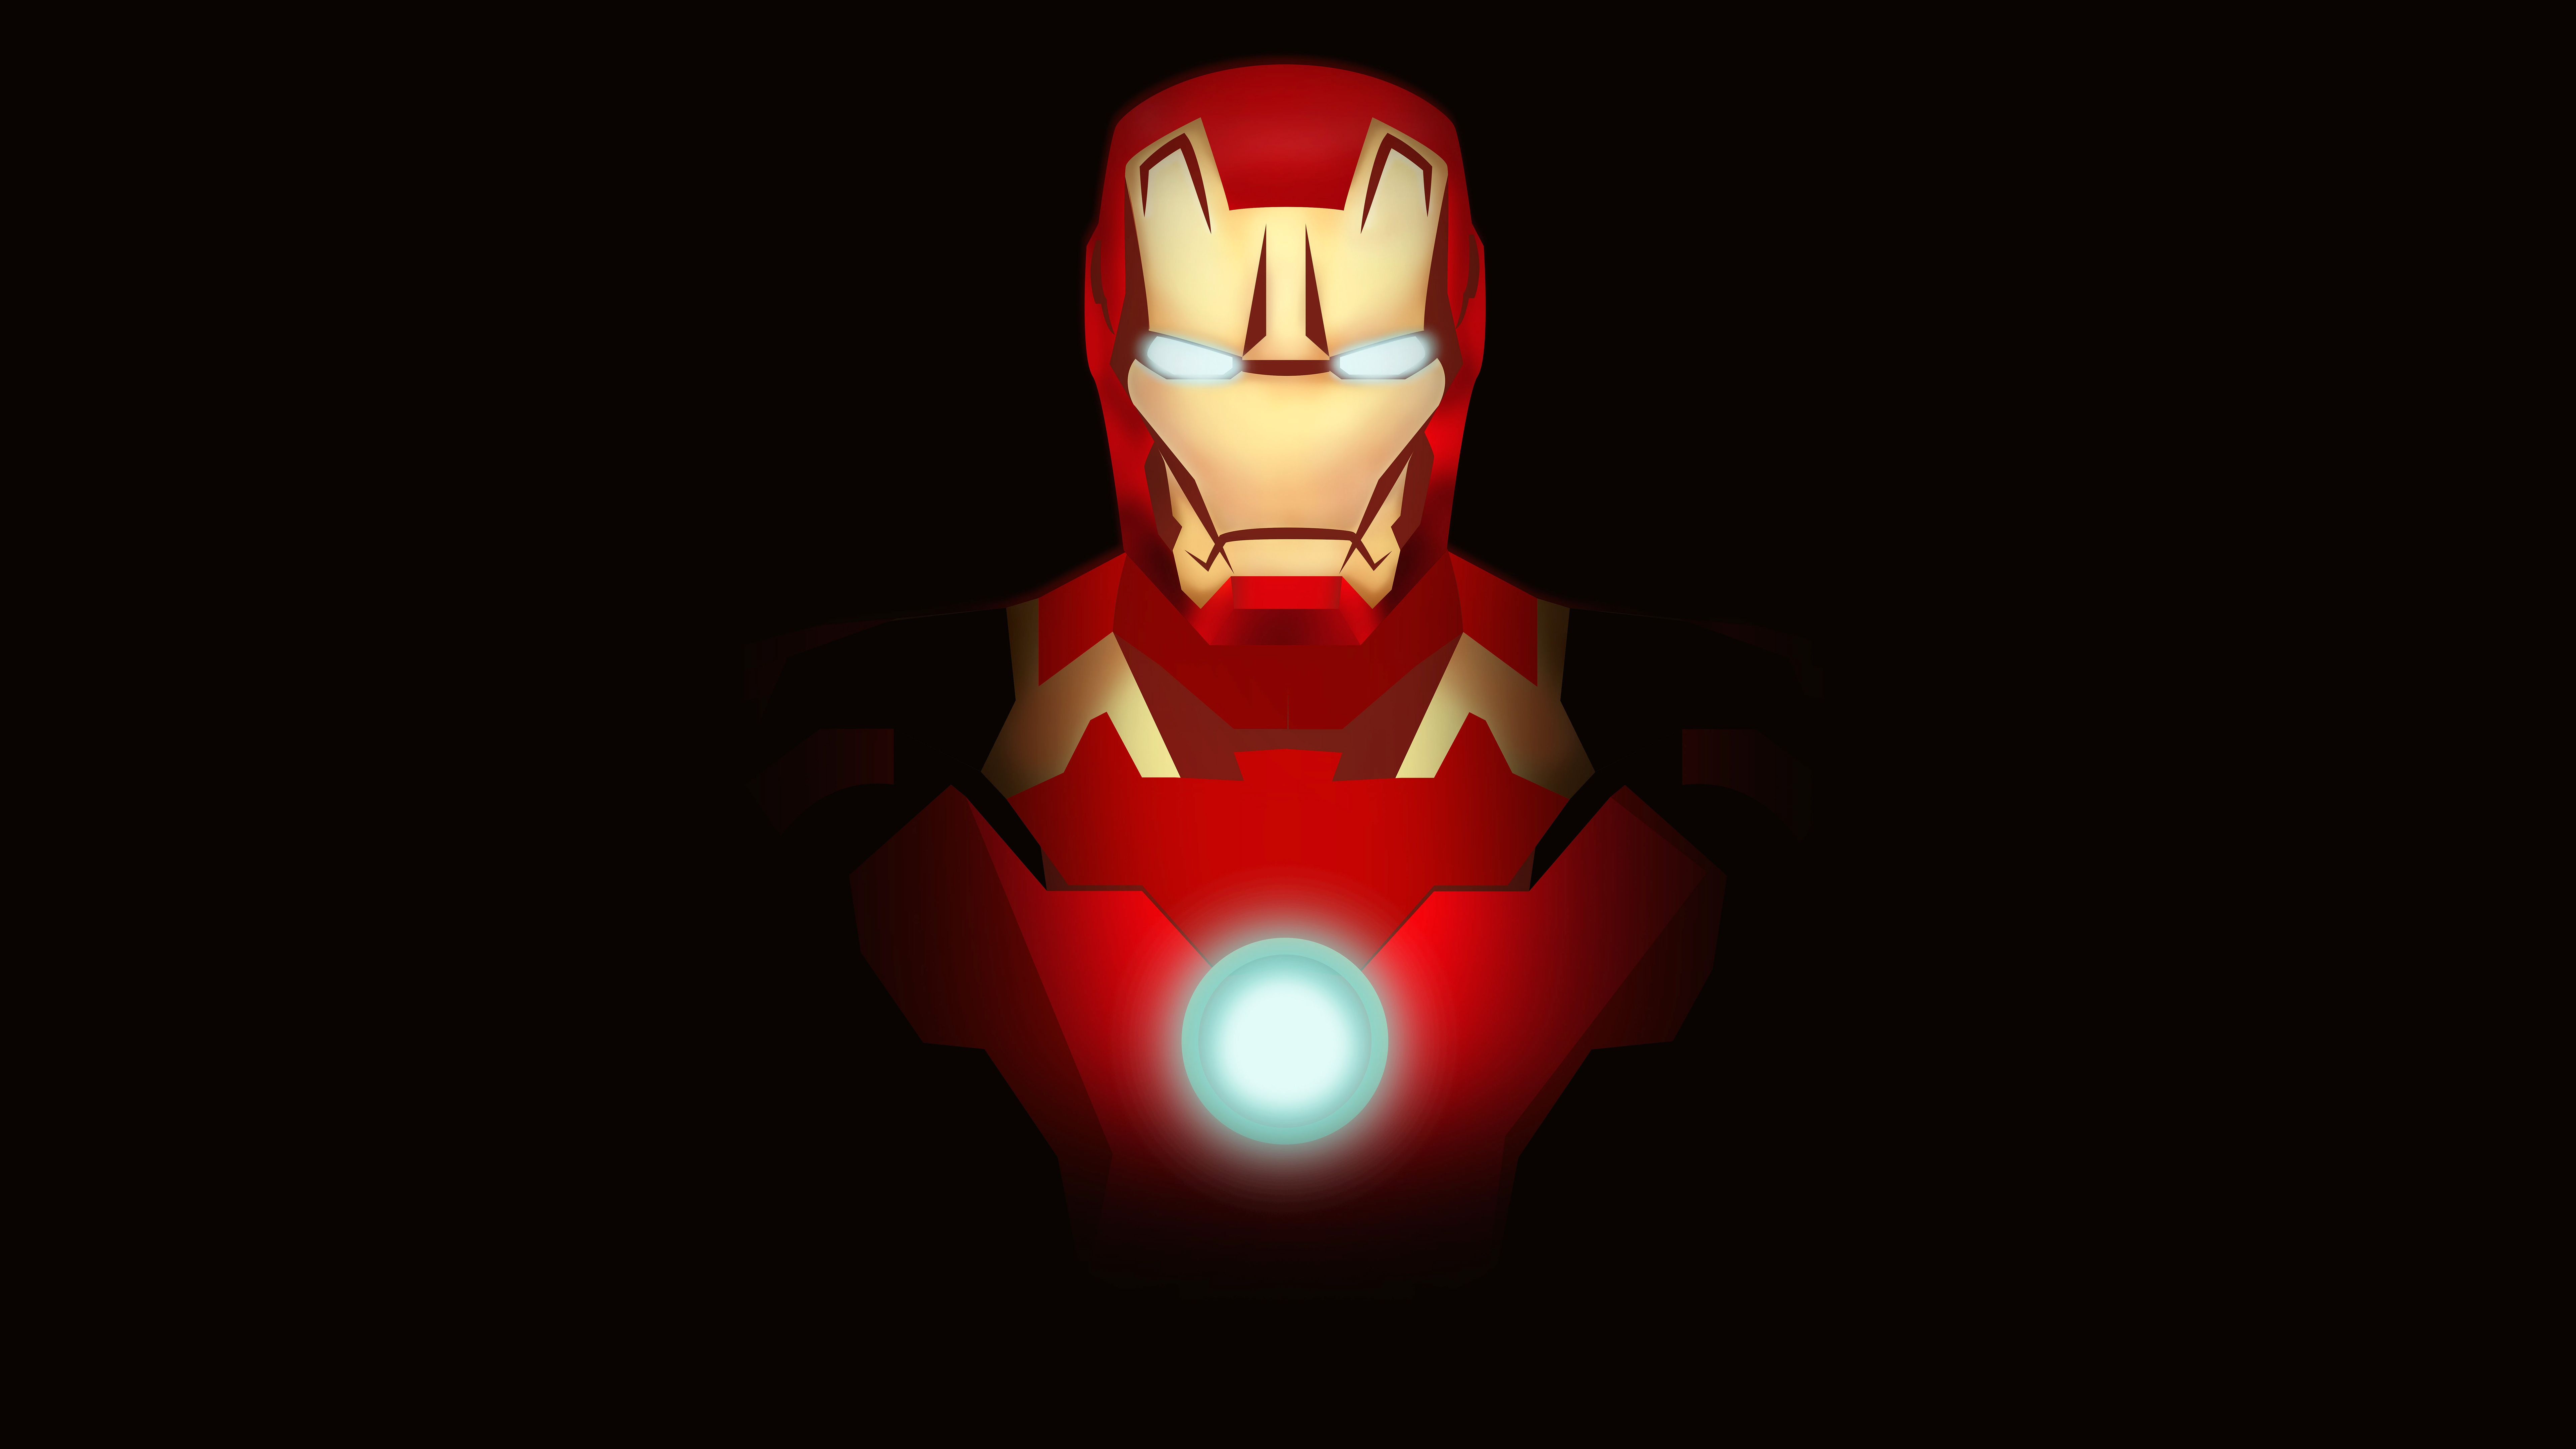 Iron Man Minimal Fan art 4K 8K Wallpapers